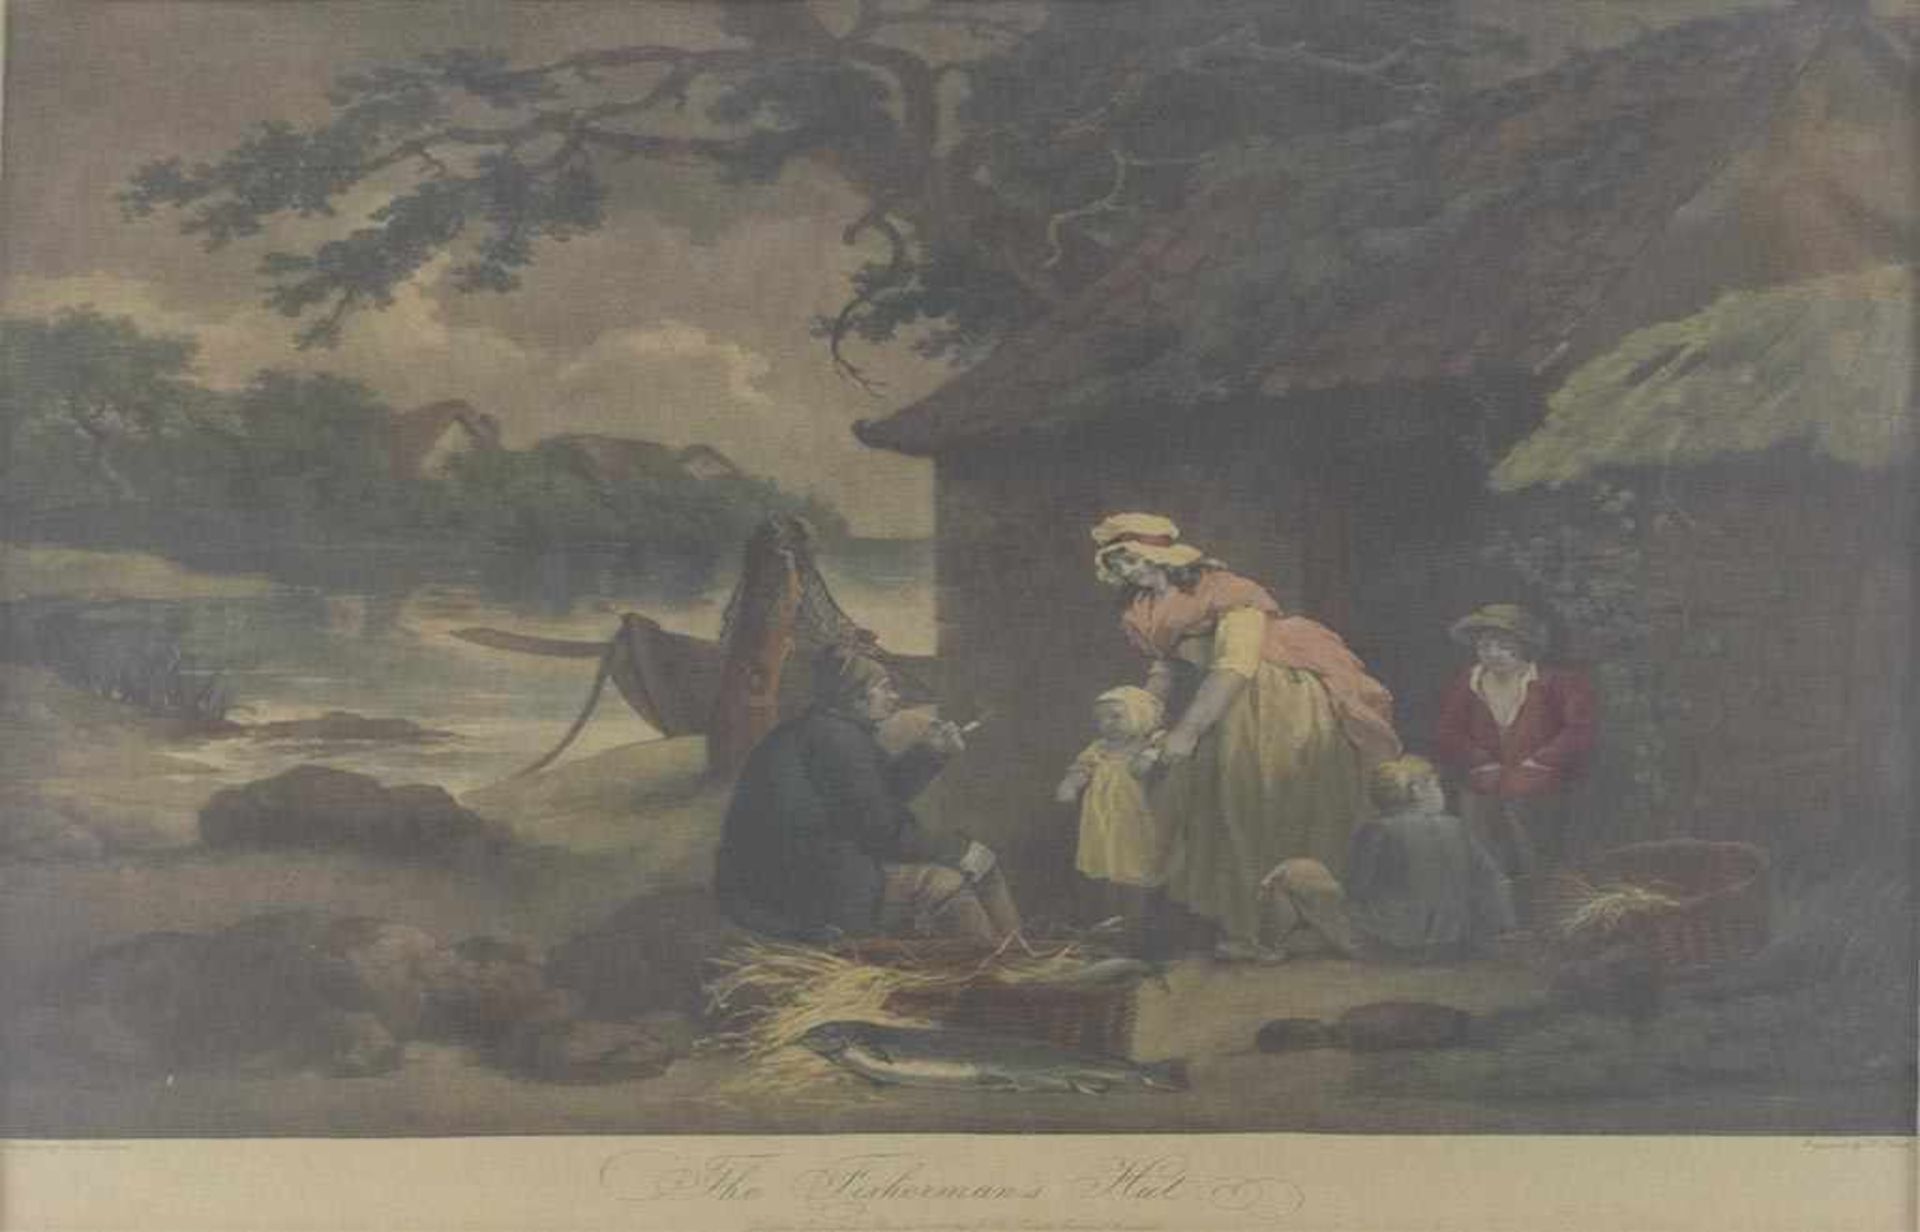 The Fisherman's Hut. Kol. Schabkunstblatt von William Ward (1766 - London - 1826) nach George